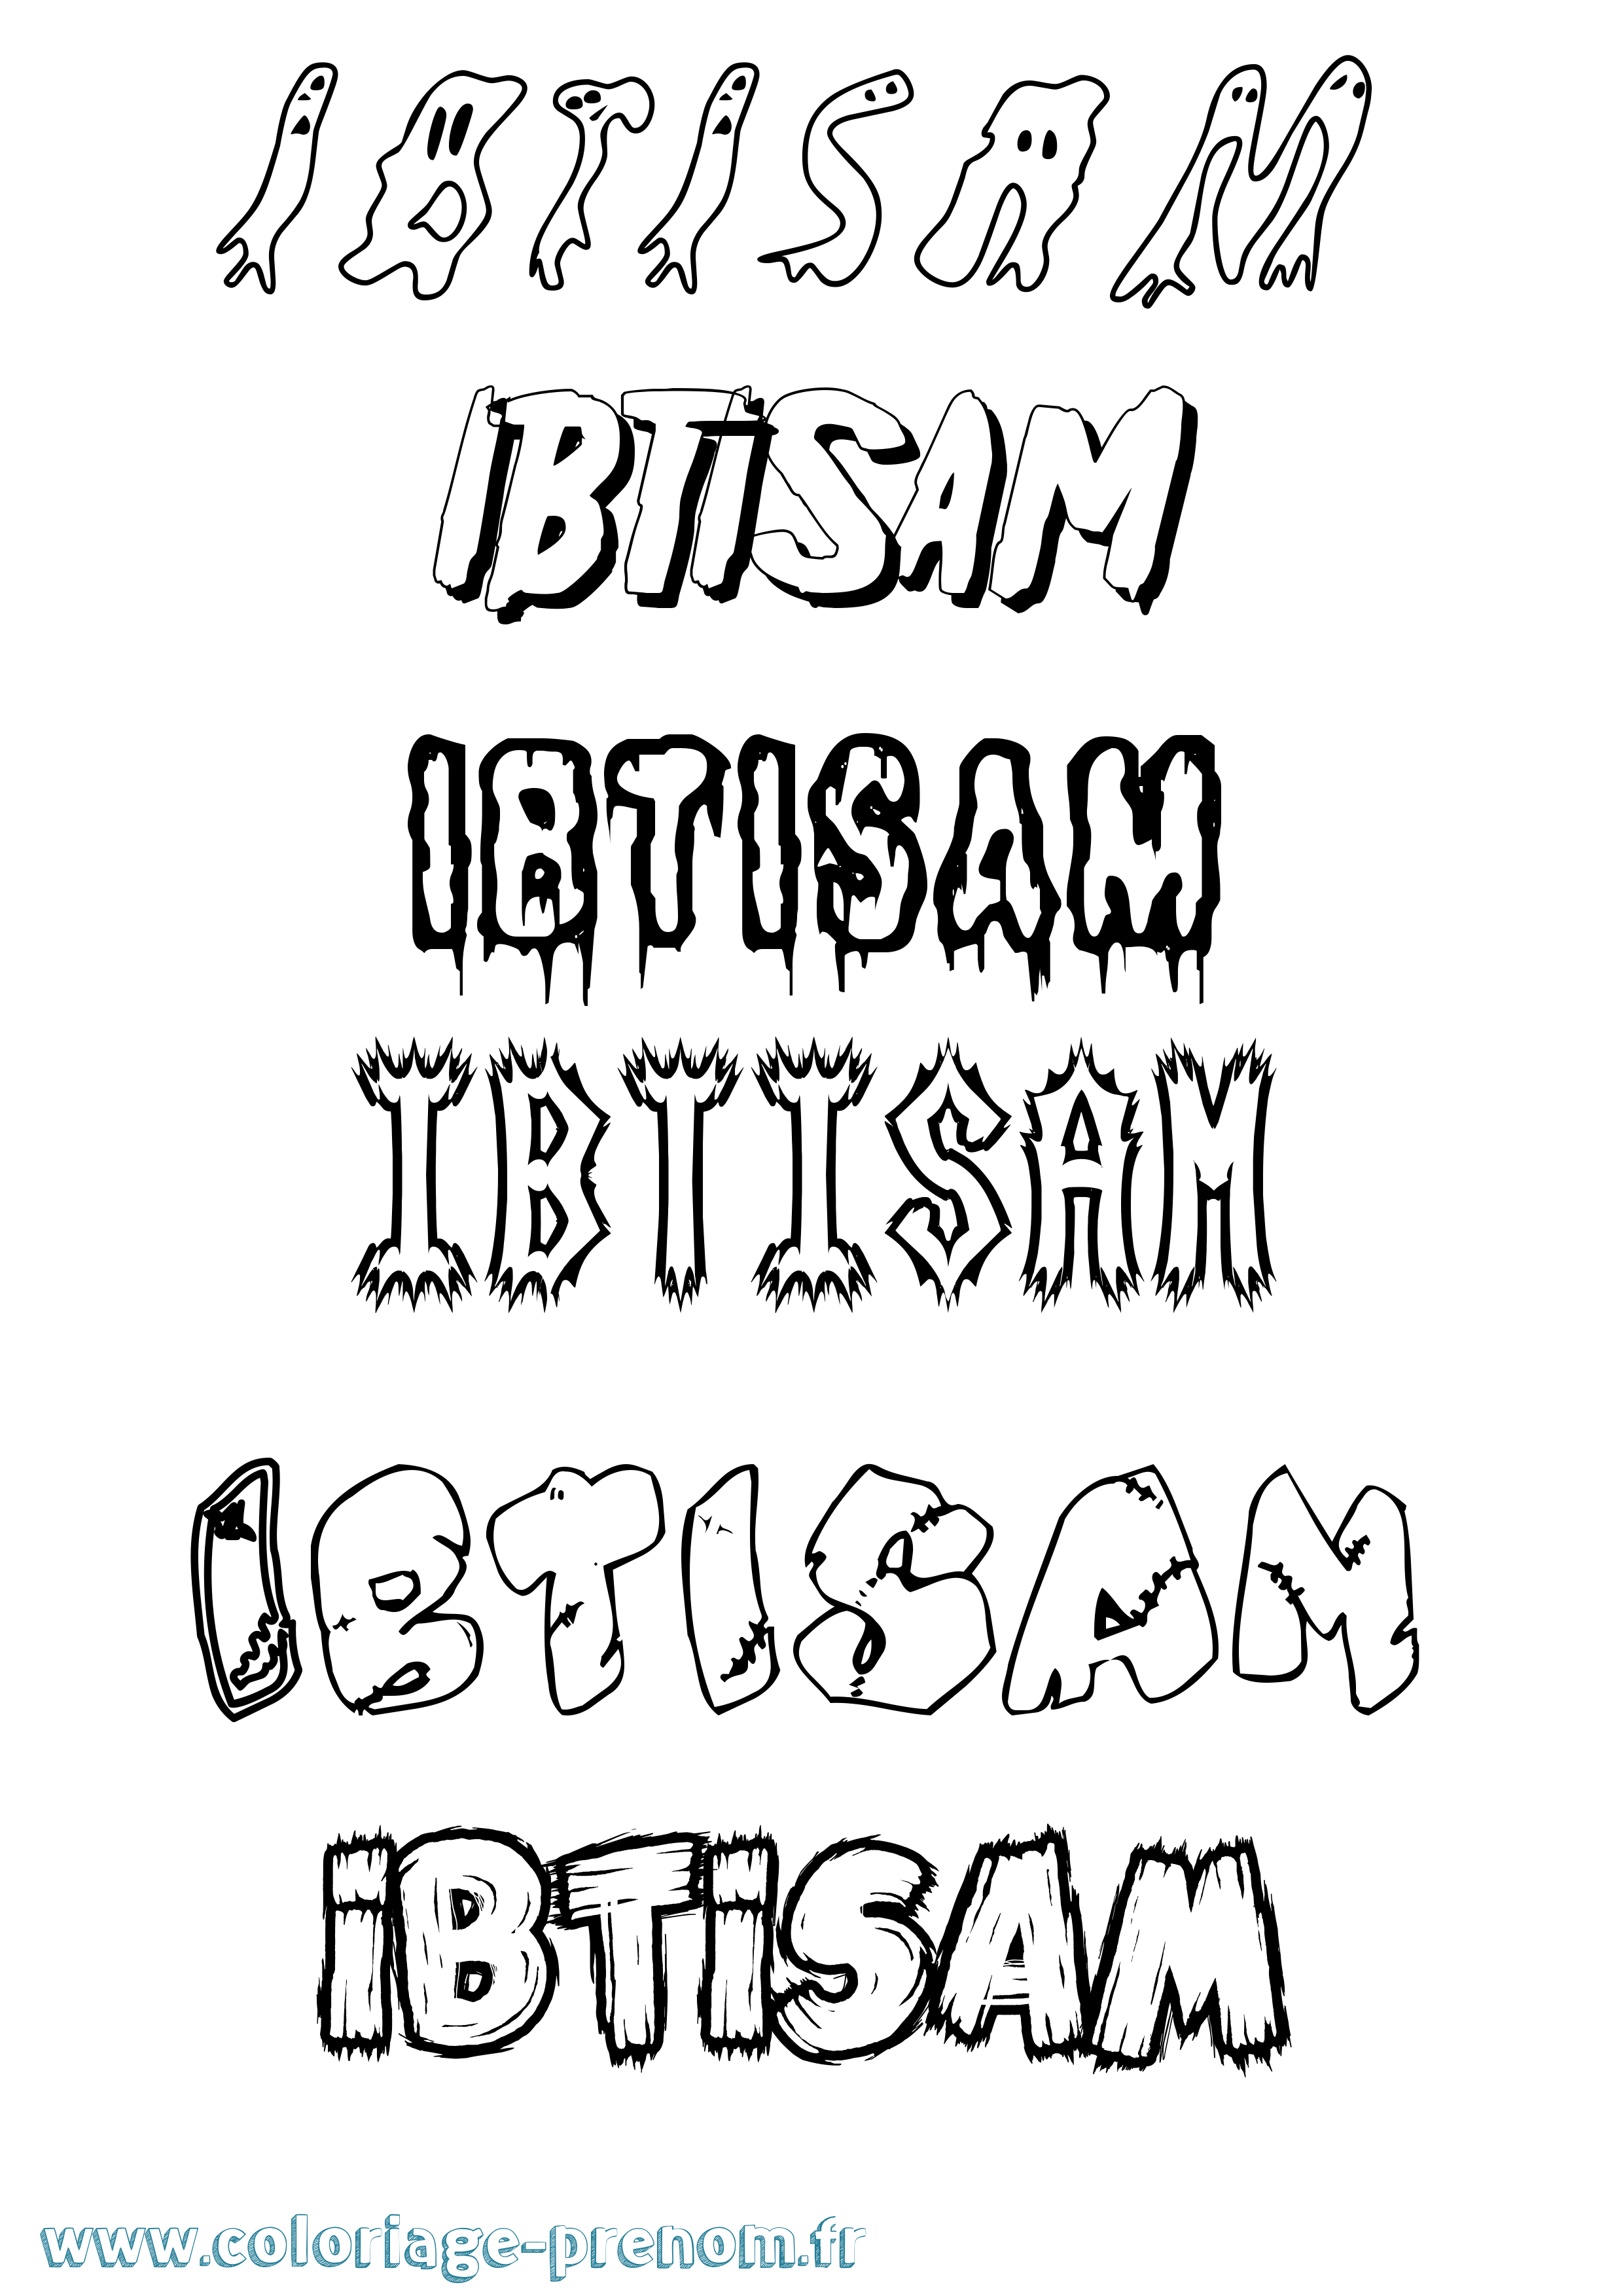 Coloriage prénom Ibtisam Frisson